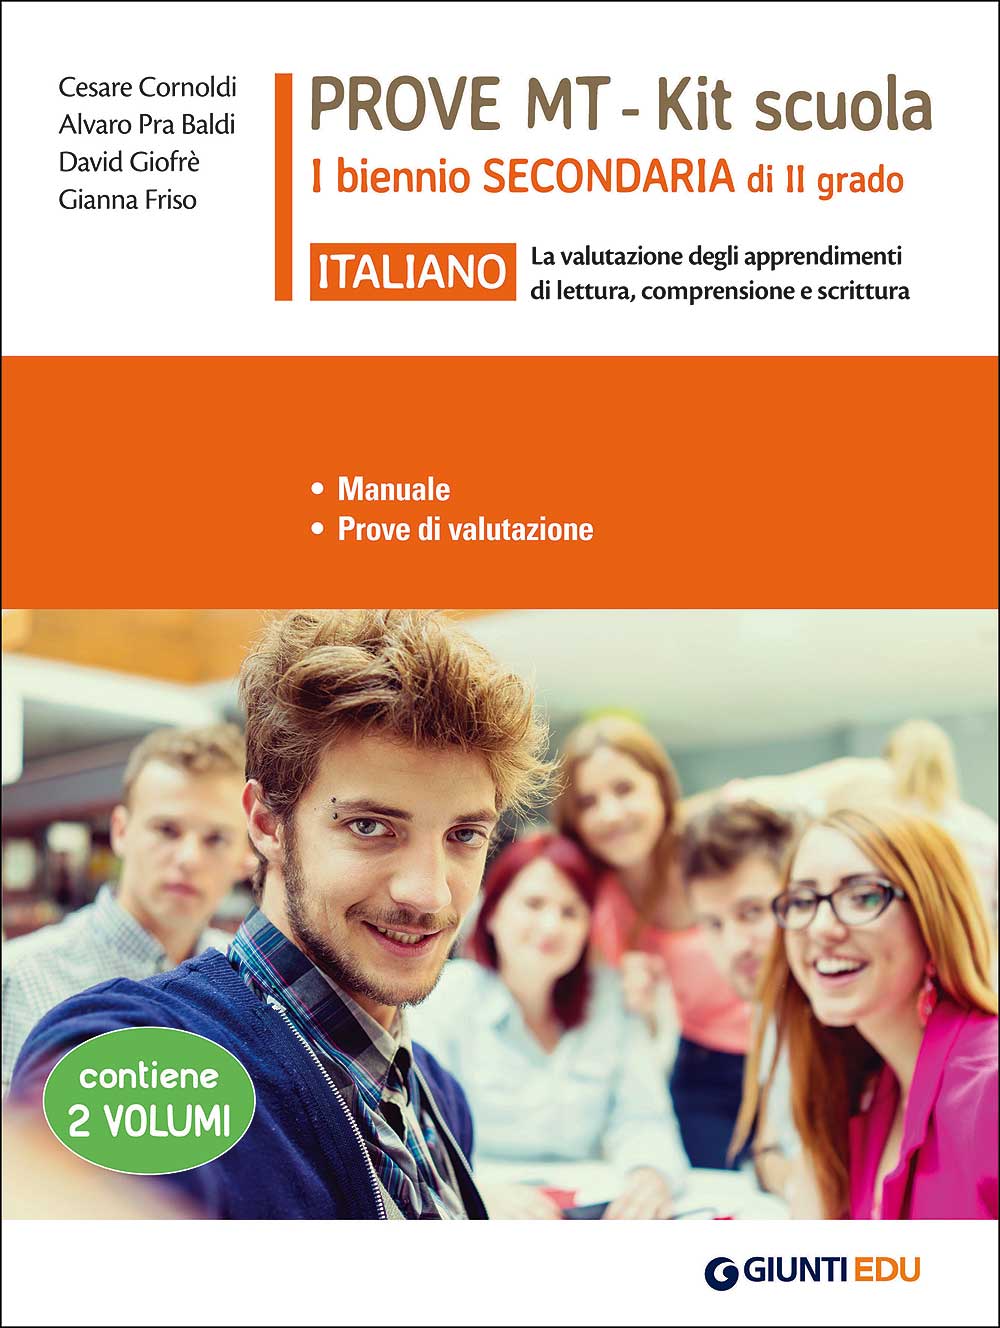 Prove MT Italiano - Kit scuola I biennio secondaria di II grado